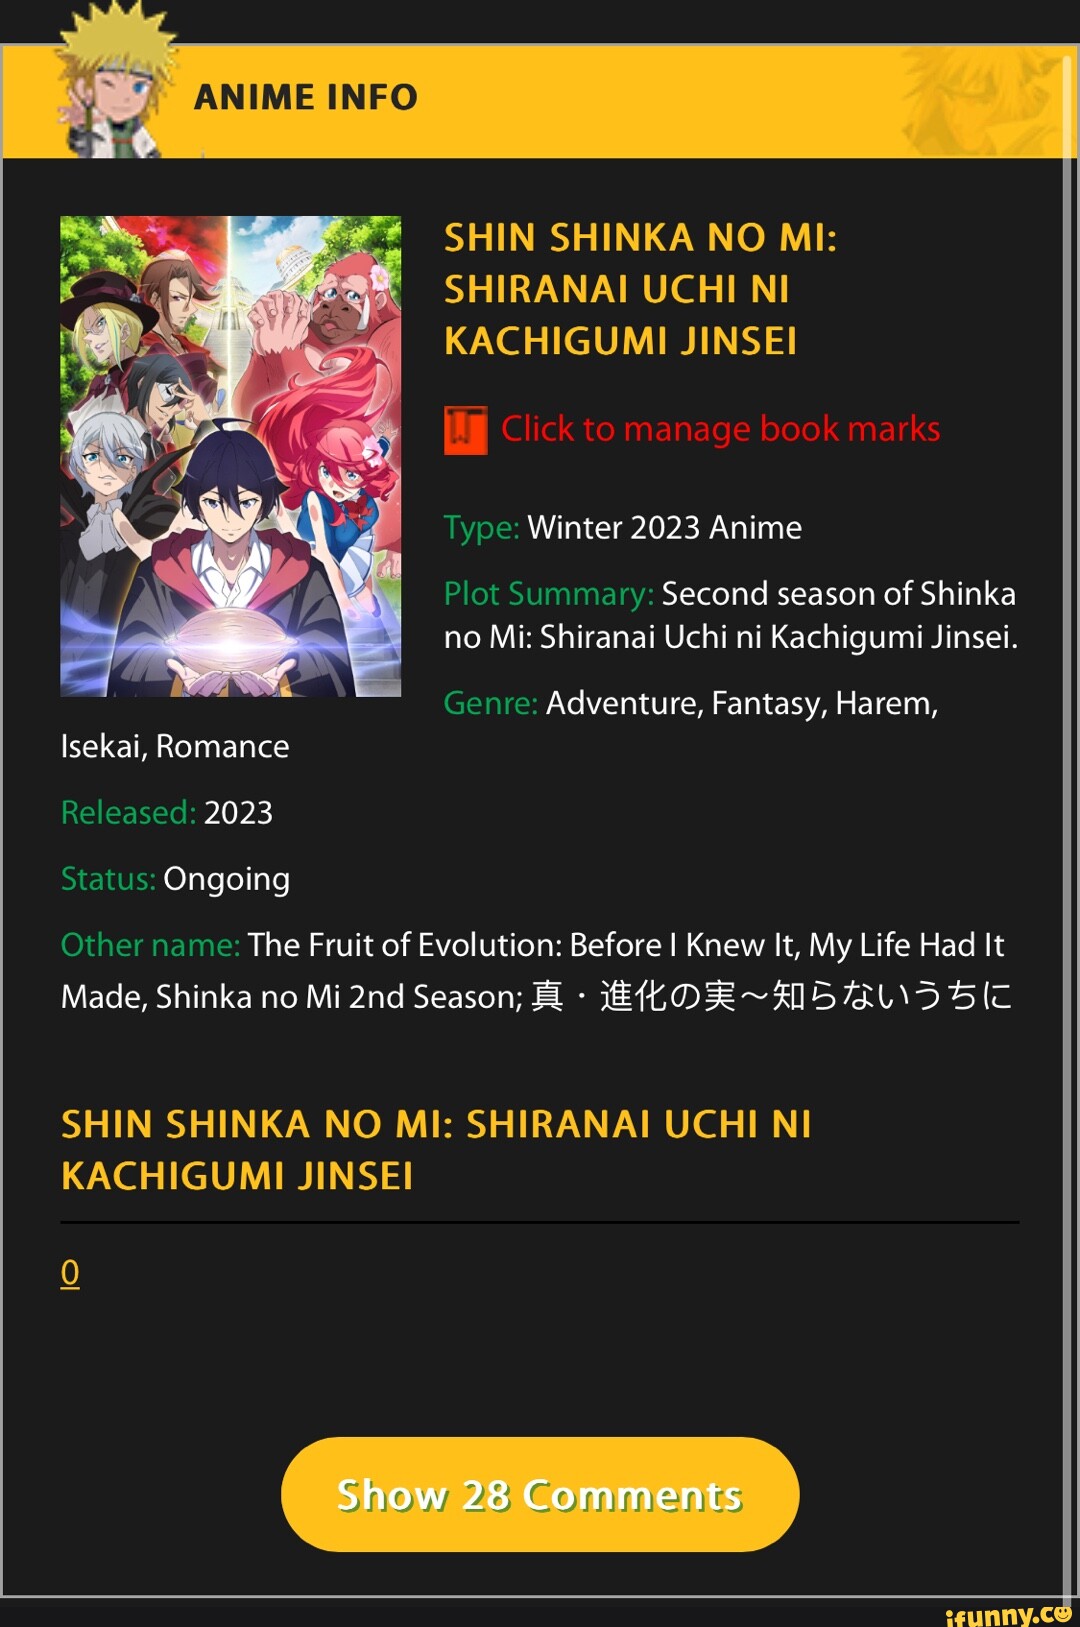 Shin Shinka no Mi: Shiranai Uchi ni Kachigumi Jinsei - The Fruit of  Evolution: Before I Knew It, My Life Had It Made Season 2, Shinka no Mi 2nd  Season - Animes Online